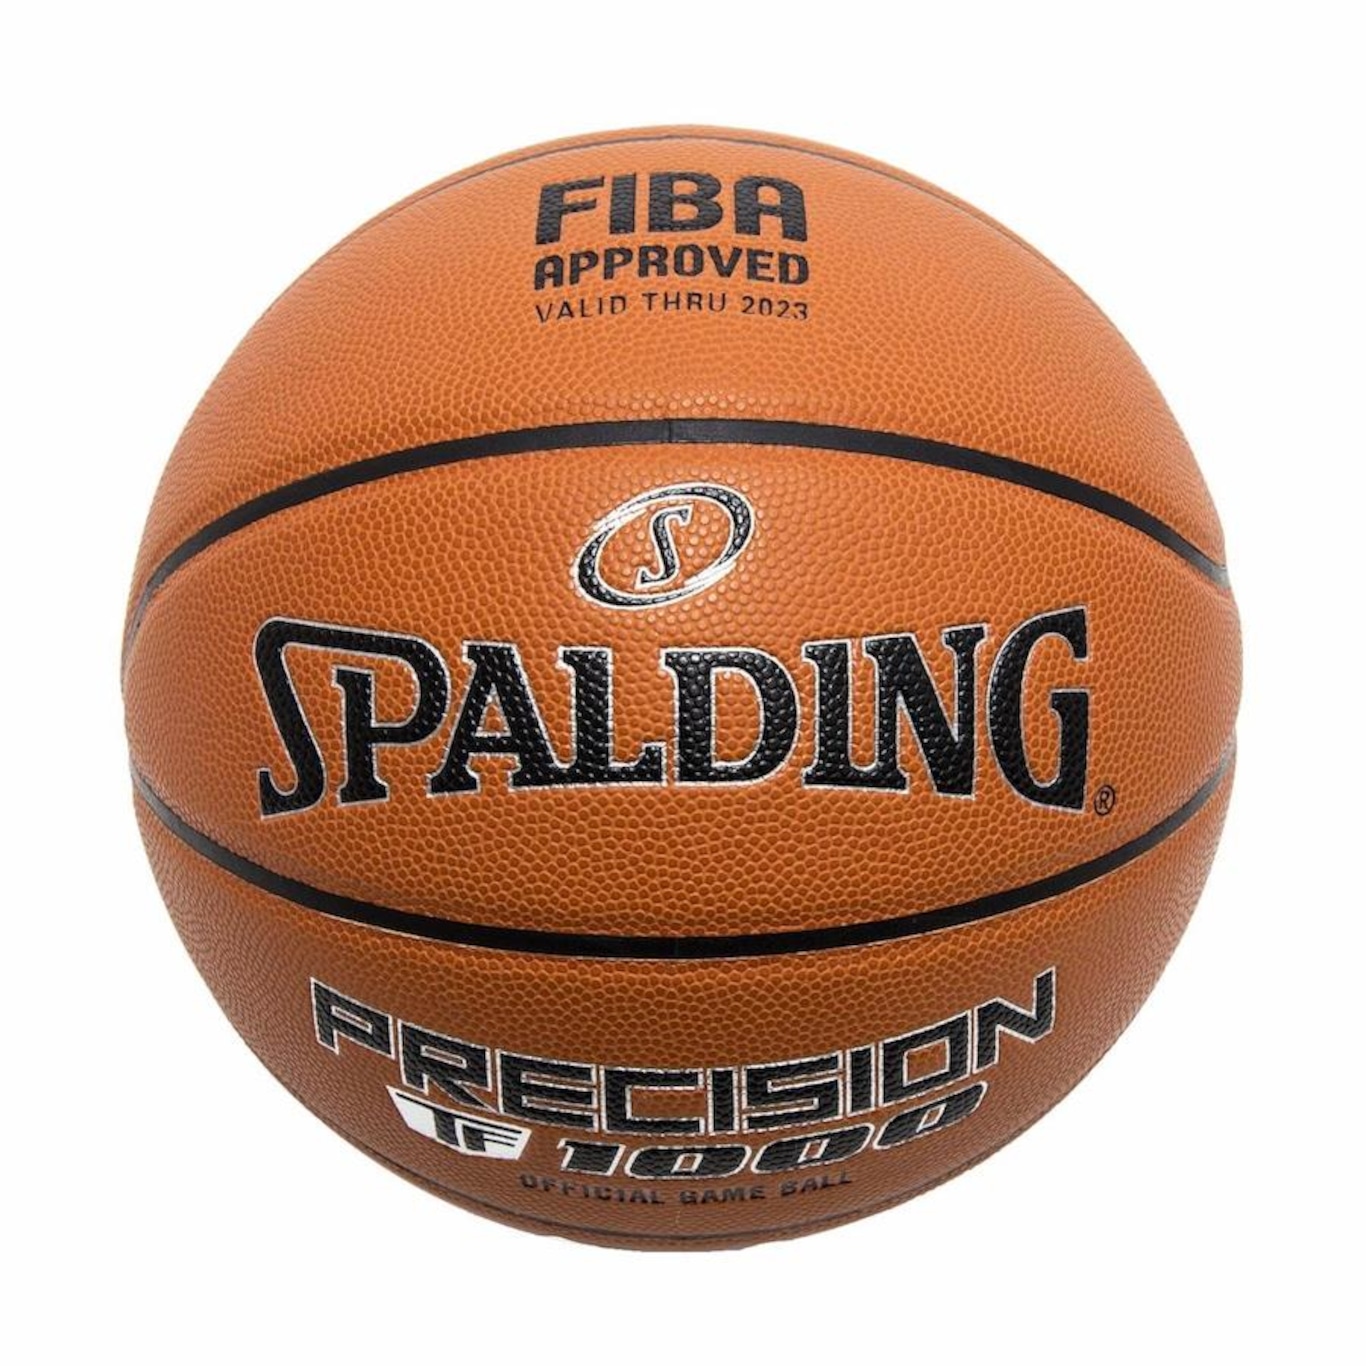 BD1000 - Bola basquetebol - AFFSPORTS